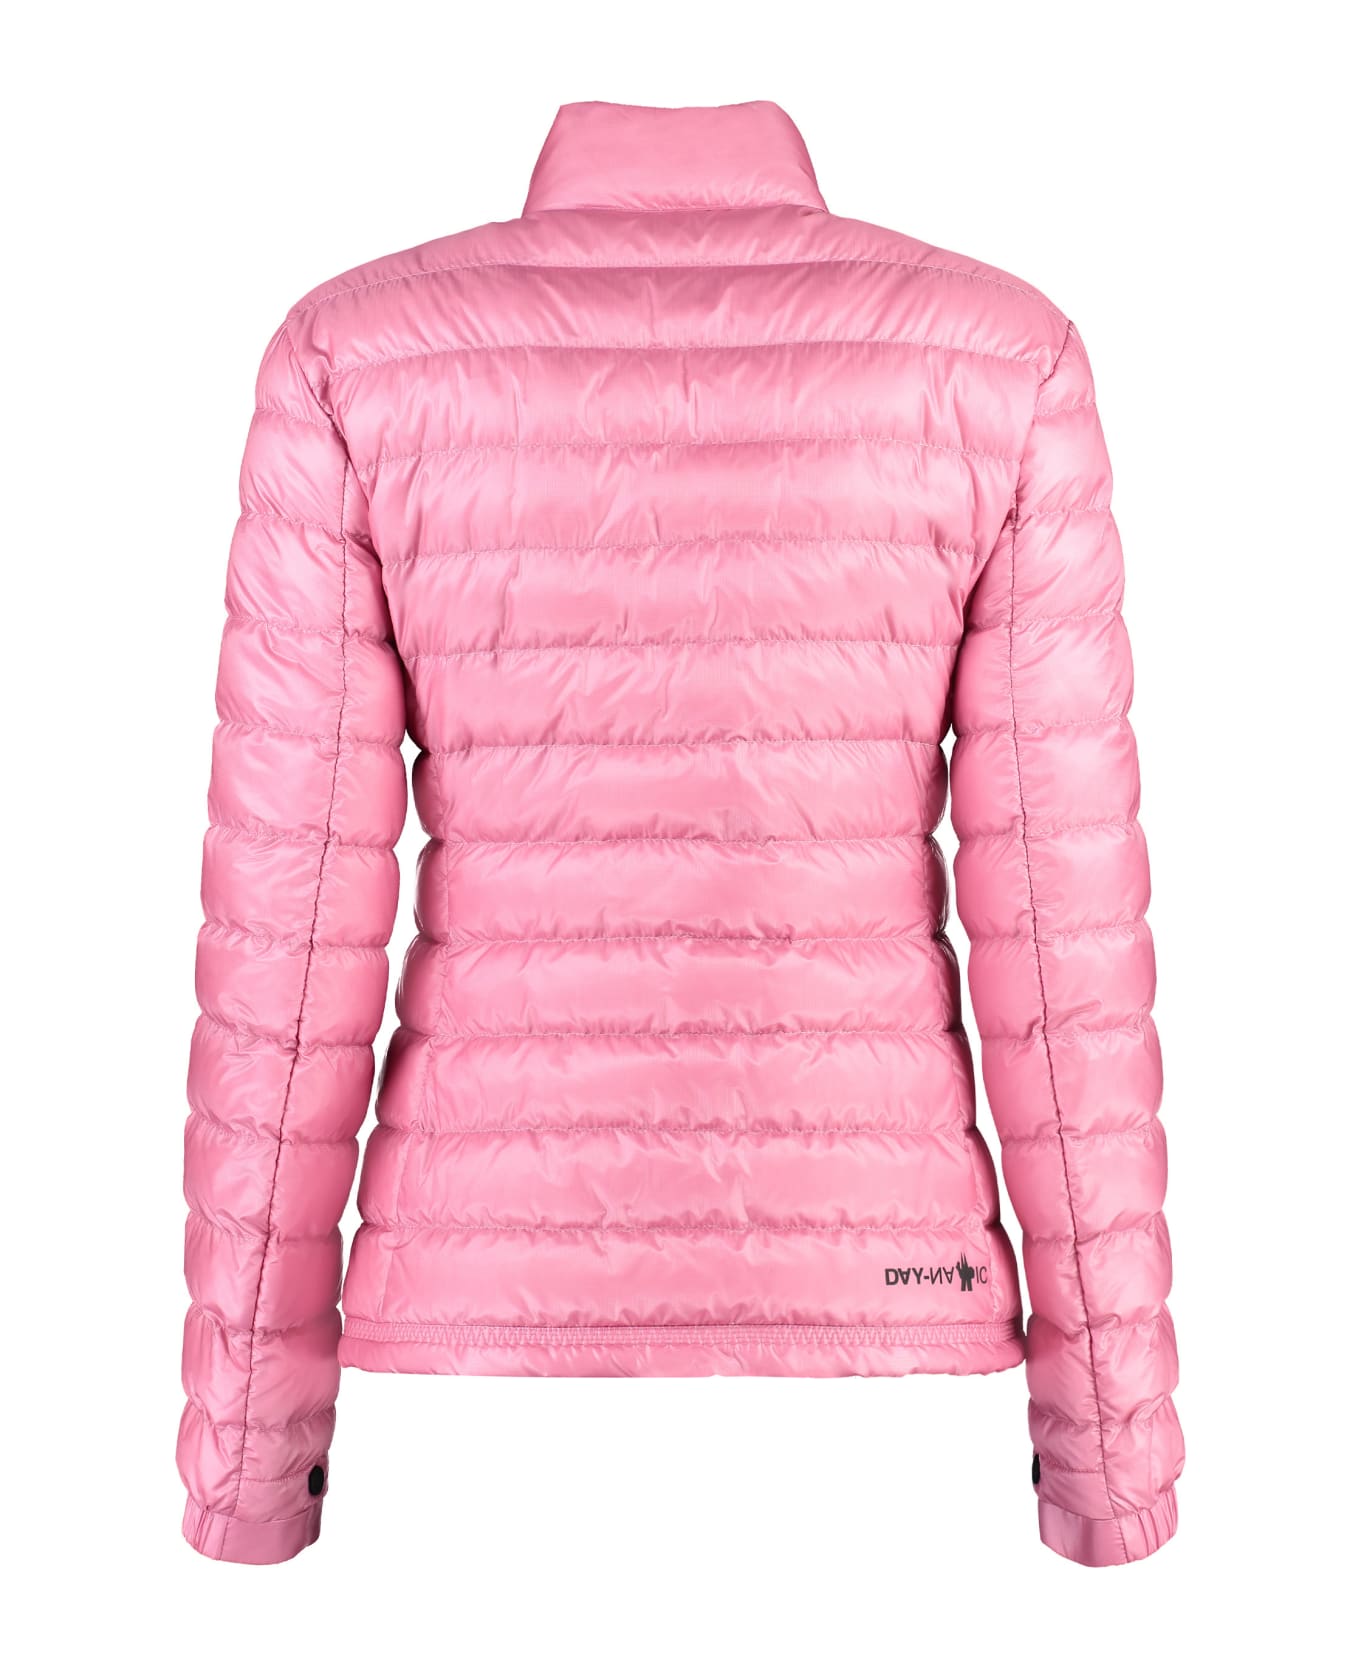 Moncler Grenoble Walibi Full Zip Down Jacket - Pink